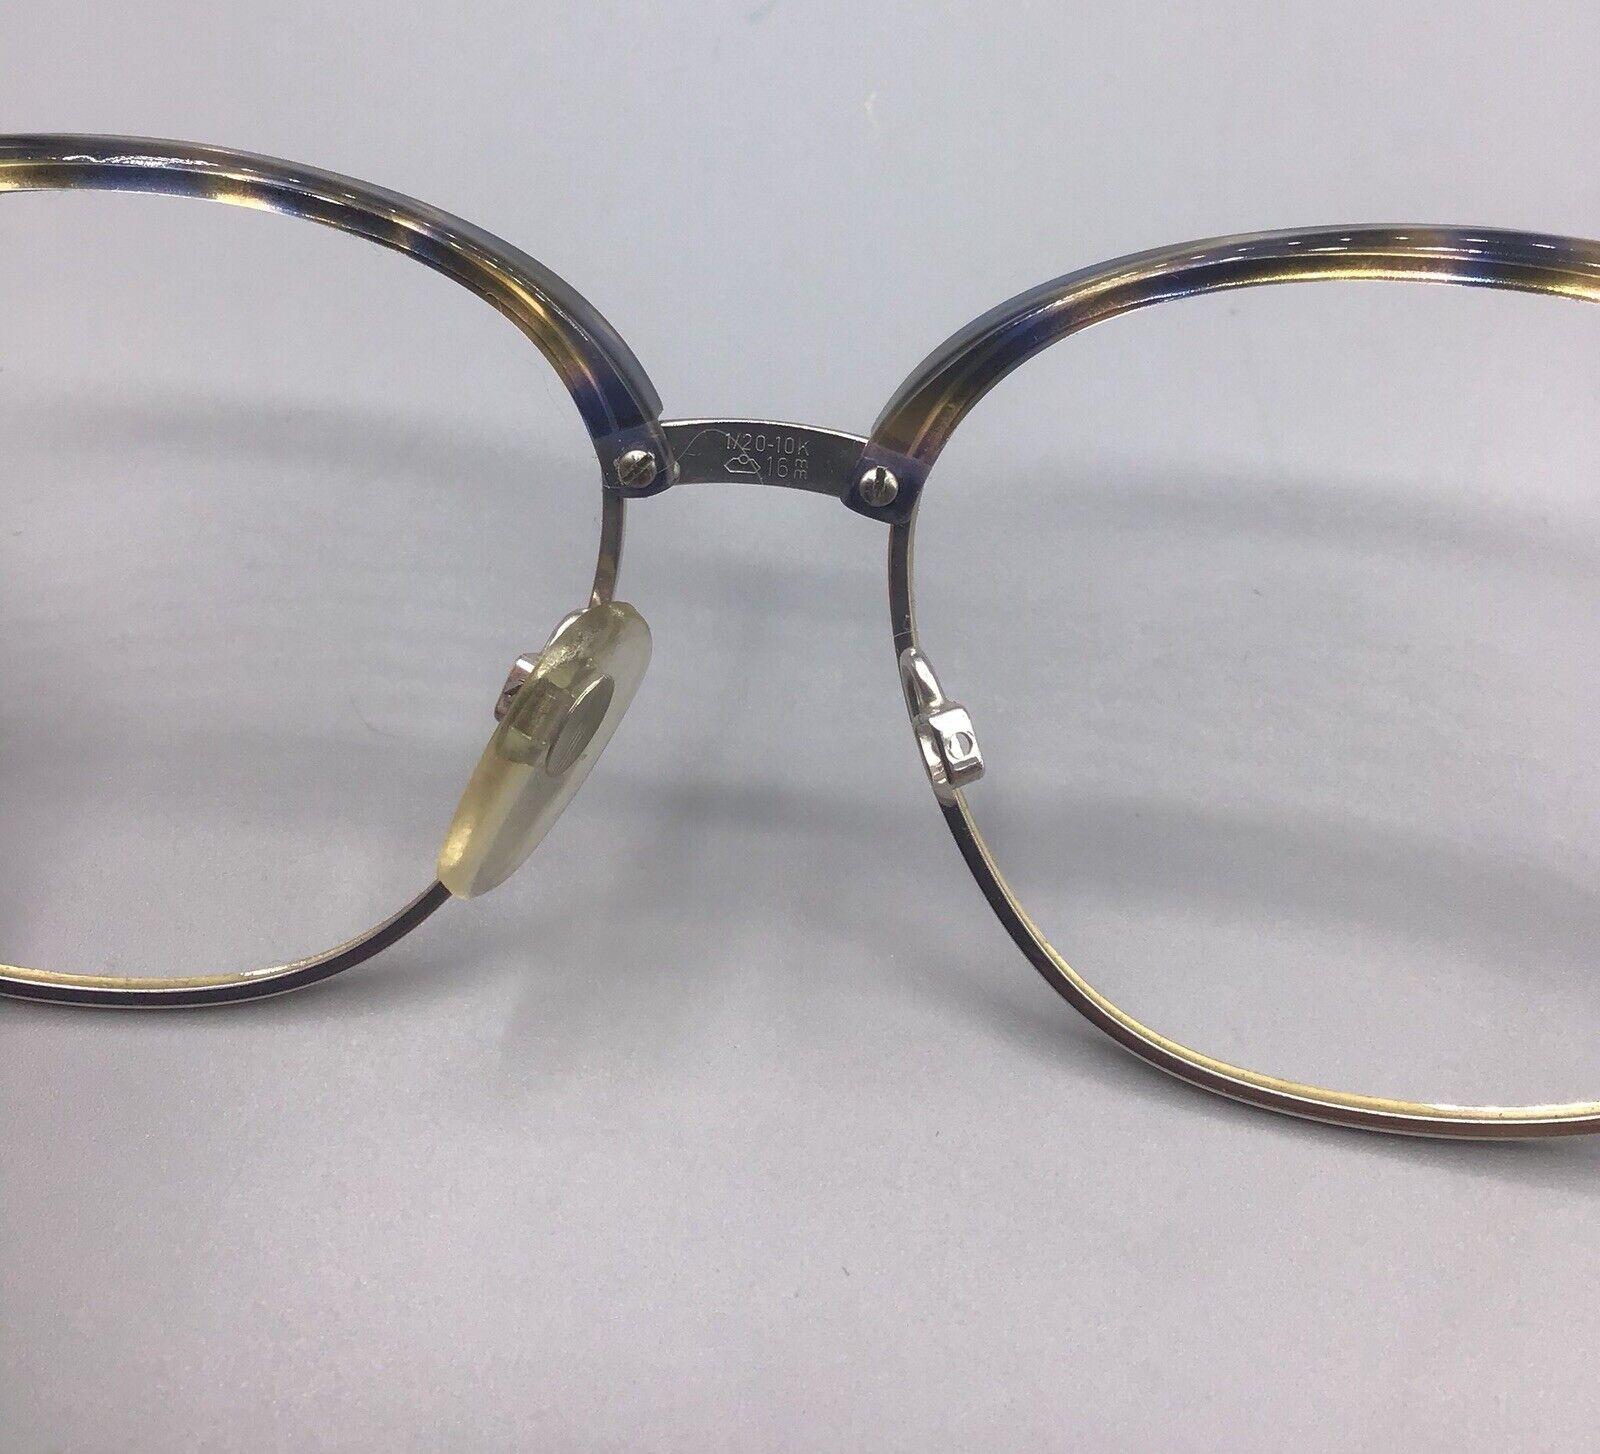 Rodenstock Cora Wd occhiale vintage eyewear frame brillen lunettes 1/20 10k